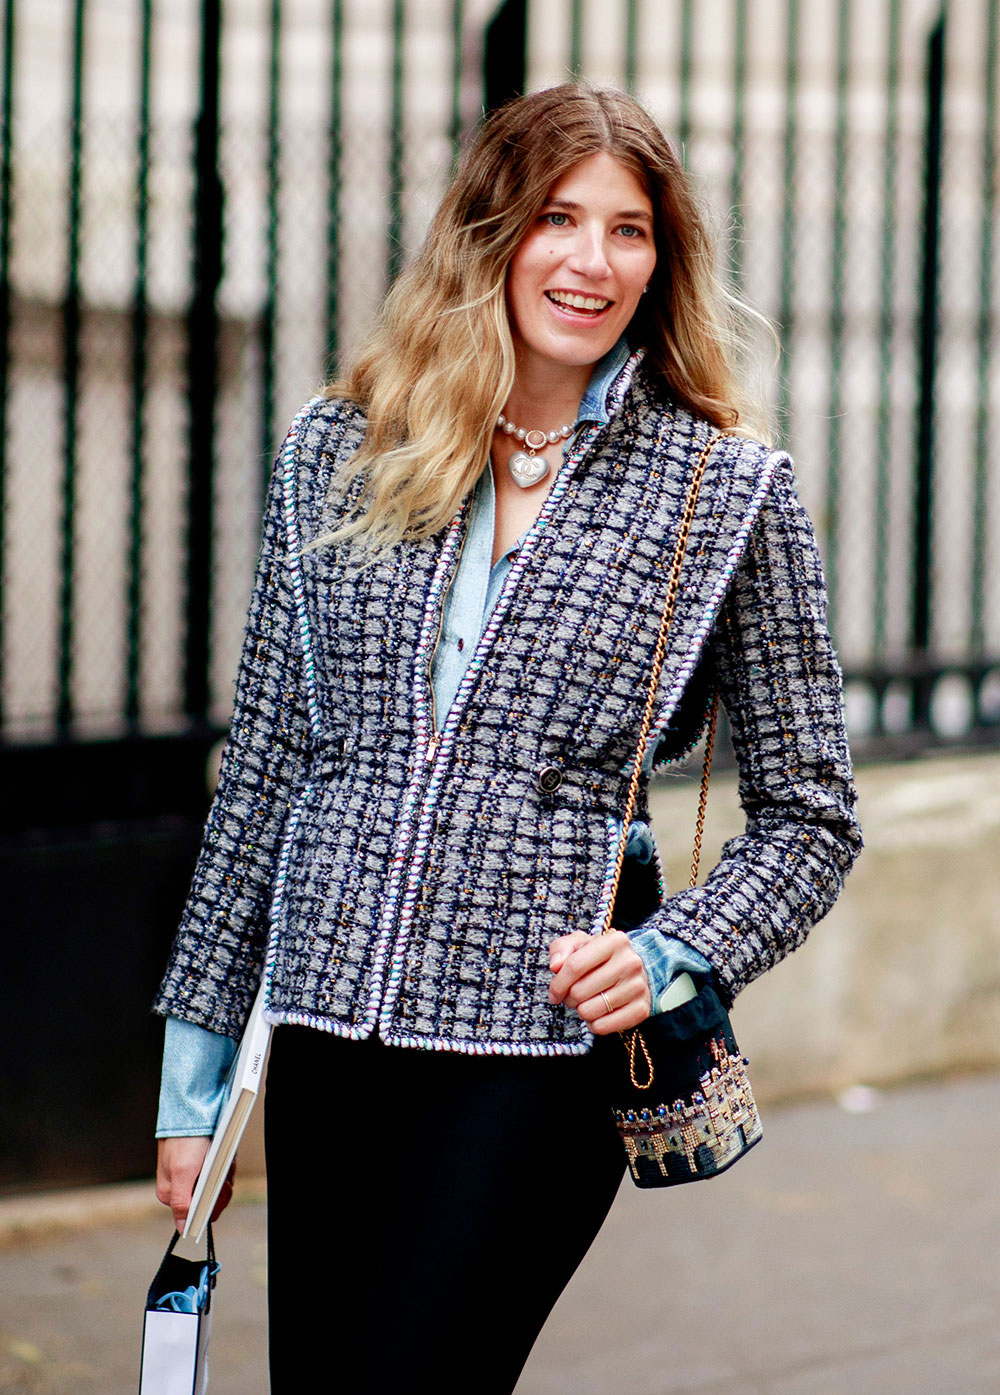 Một cô gái khác tinh tế phối mẫu túi mini được thêu hoạ tiết thành phố Paris đi cùng chiếc áo tweed trứ danh của Chanel. Được biết đây là mẫu phụ kiện nằm trong BST Fall - Winter 2021 của Chanel.